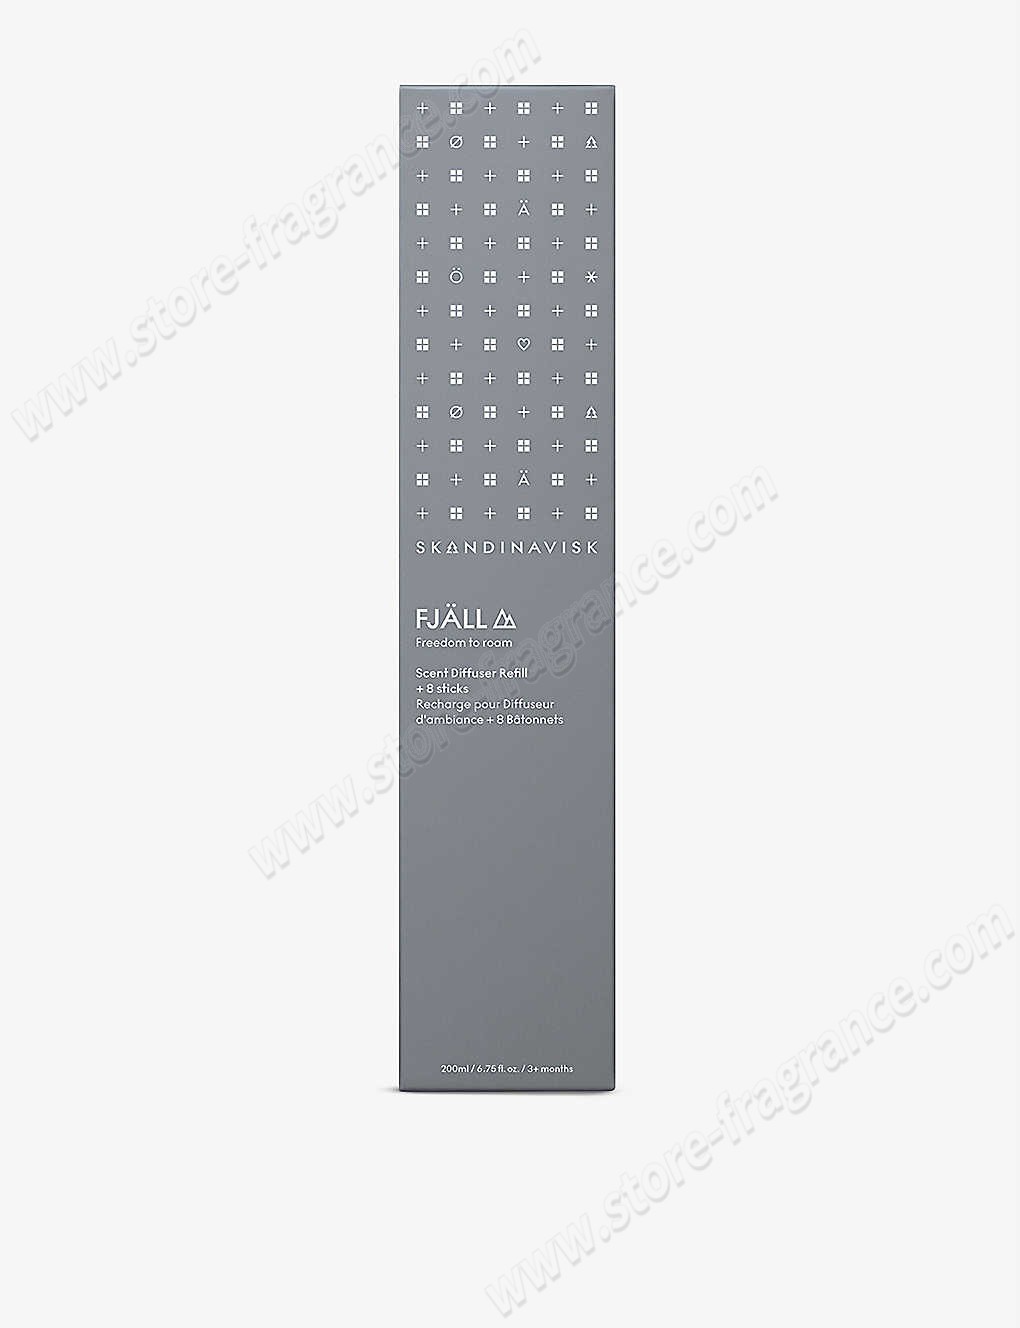 SKANDINAVISK/Fjall scented reed diffuser refill 200ml Limit Offer - -1